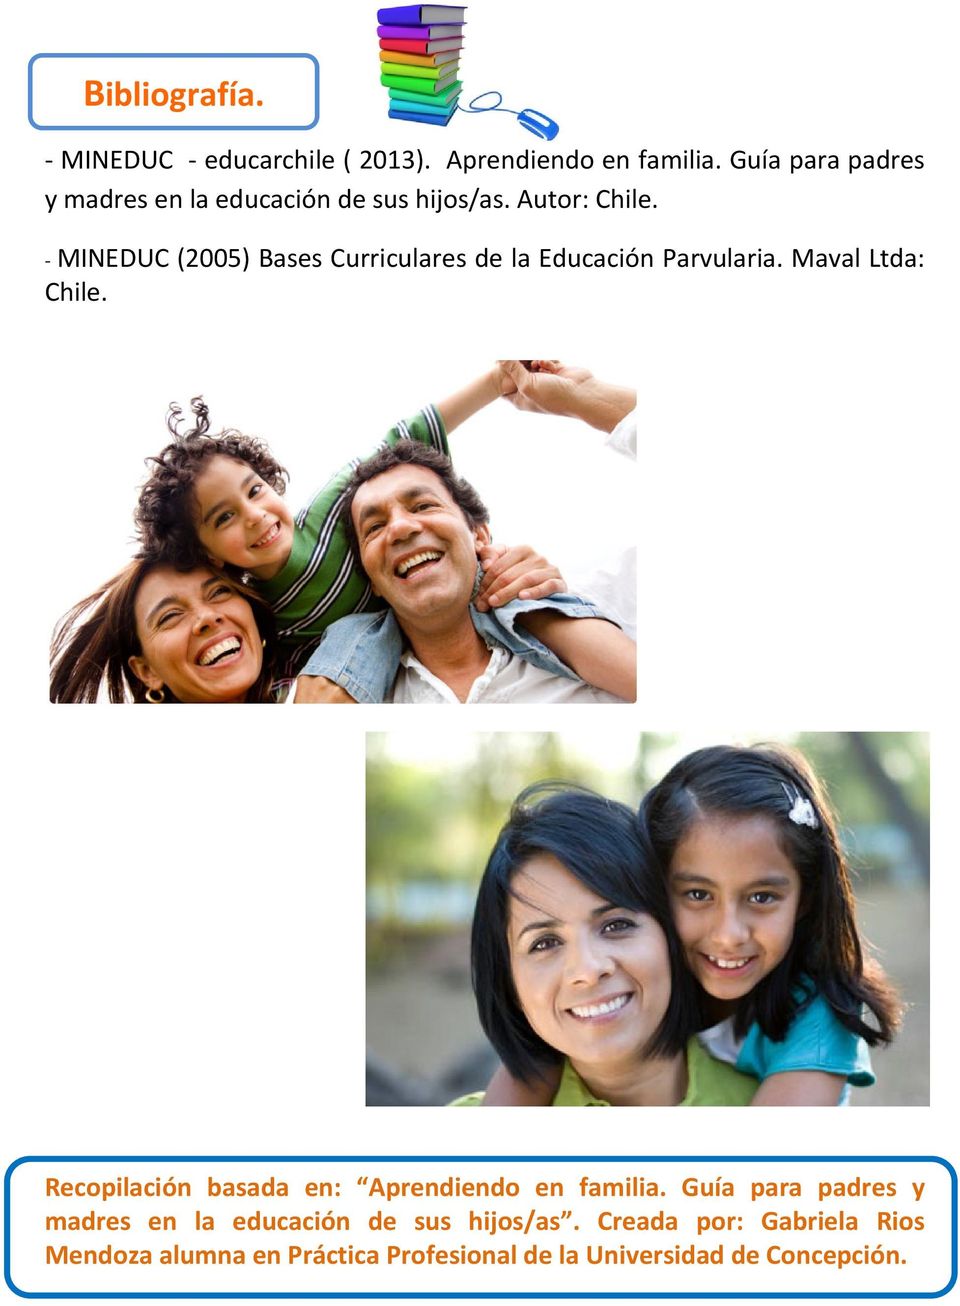 - MINEDUC (2005) Bases Curriculares de la Educación Parvularia. Maval Ltda: Chile.